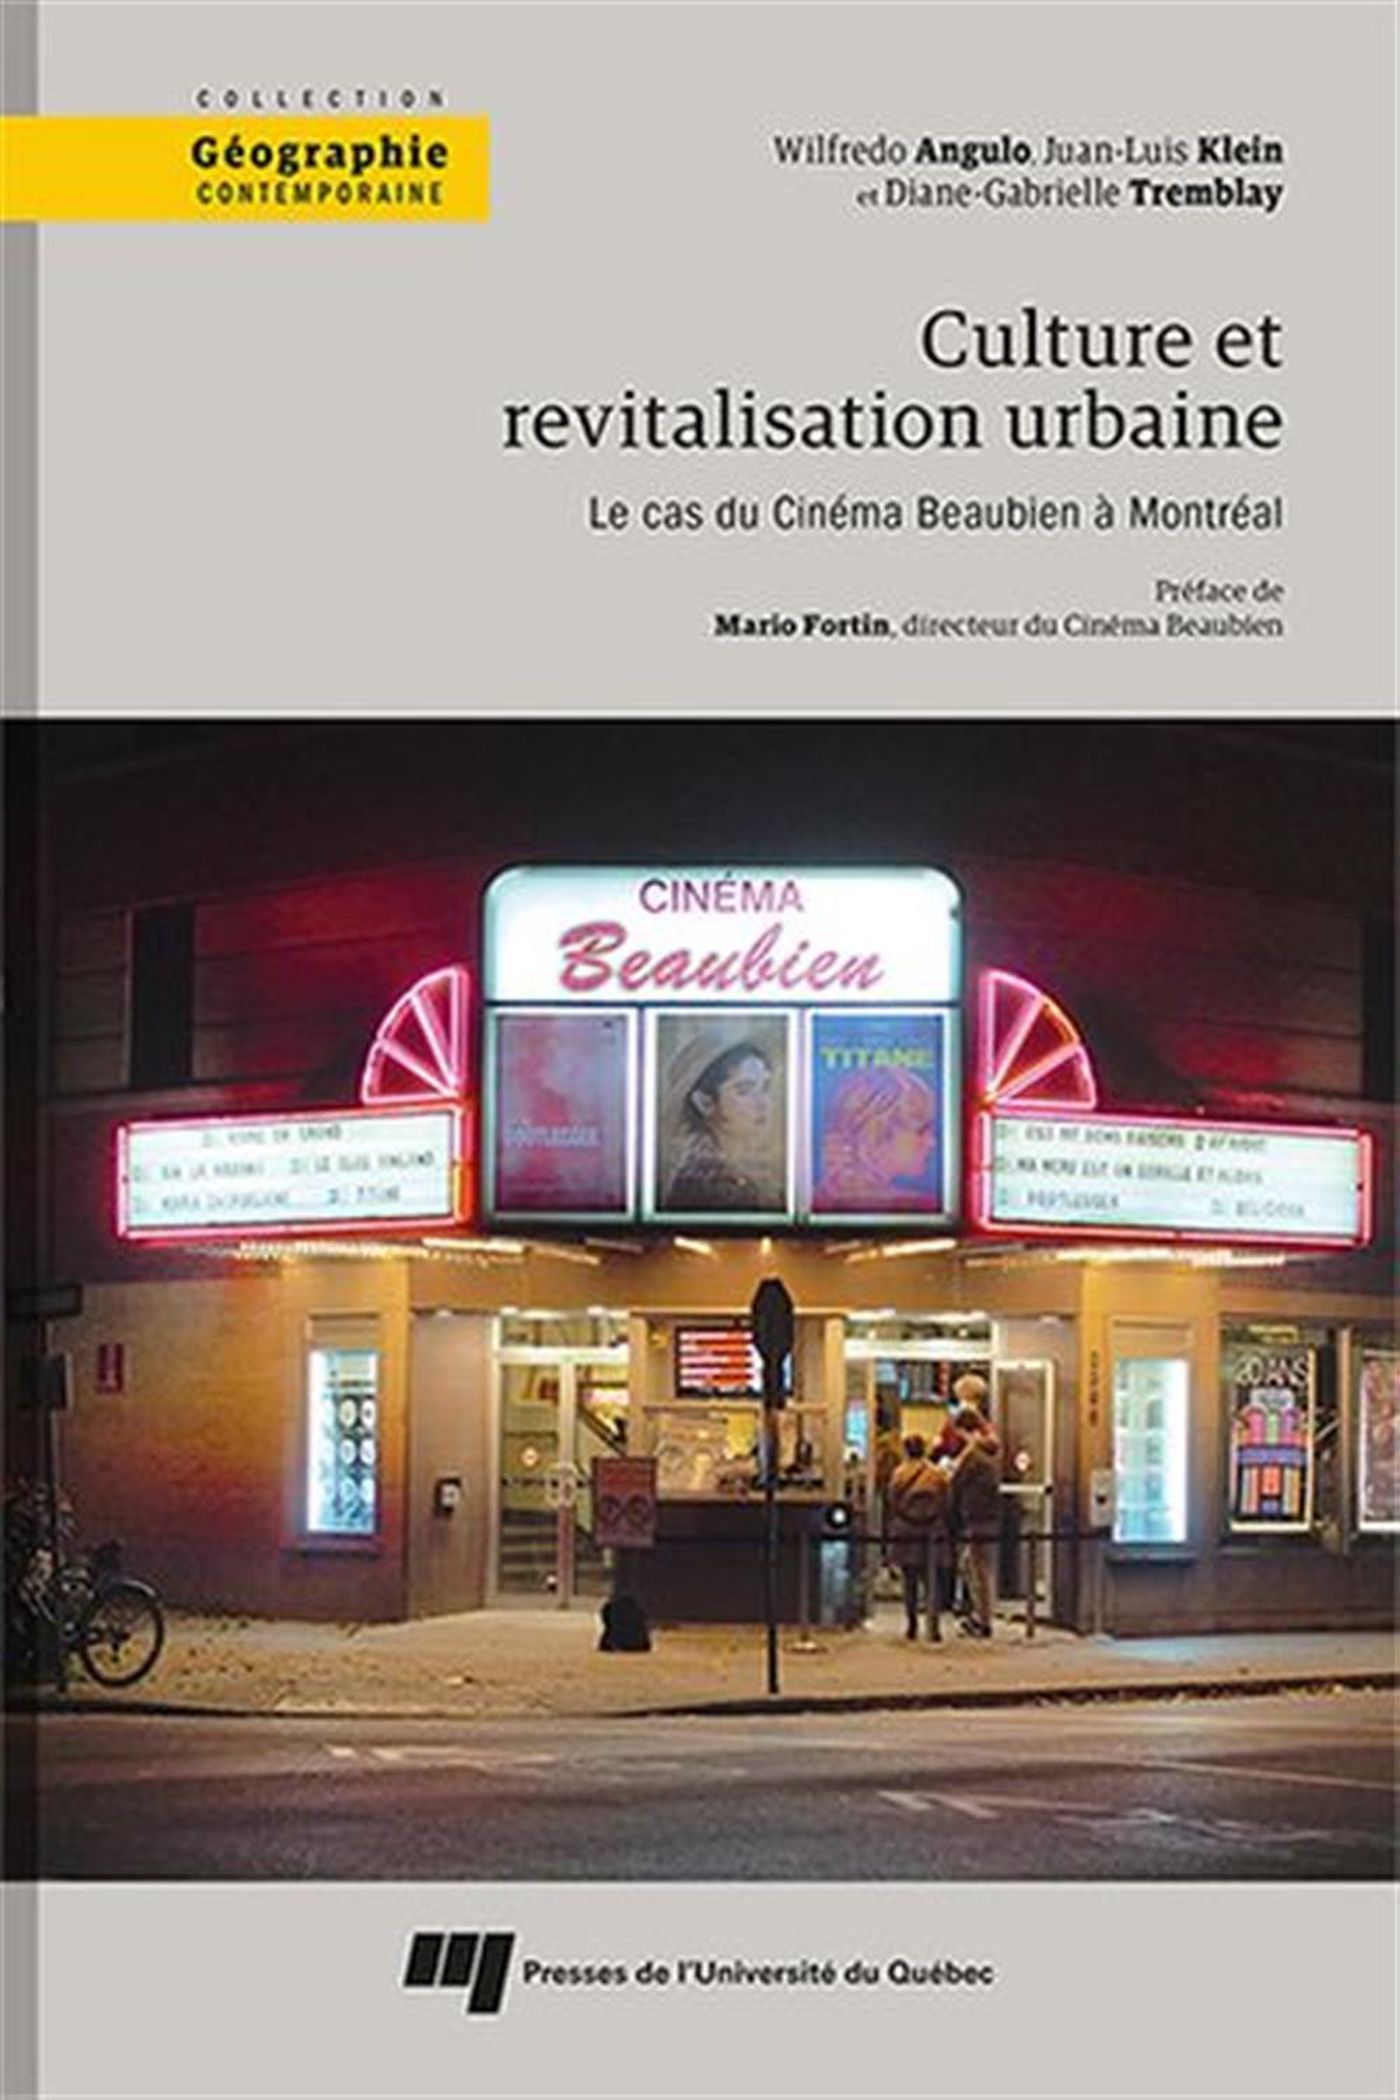 Image Culture et revitalisation urbaine : le cas du Cinéma Beaubien à Montréal